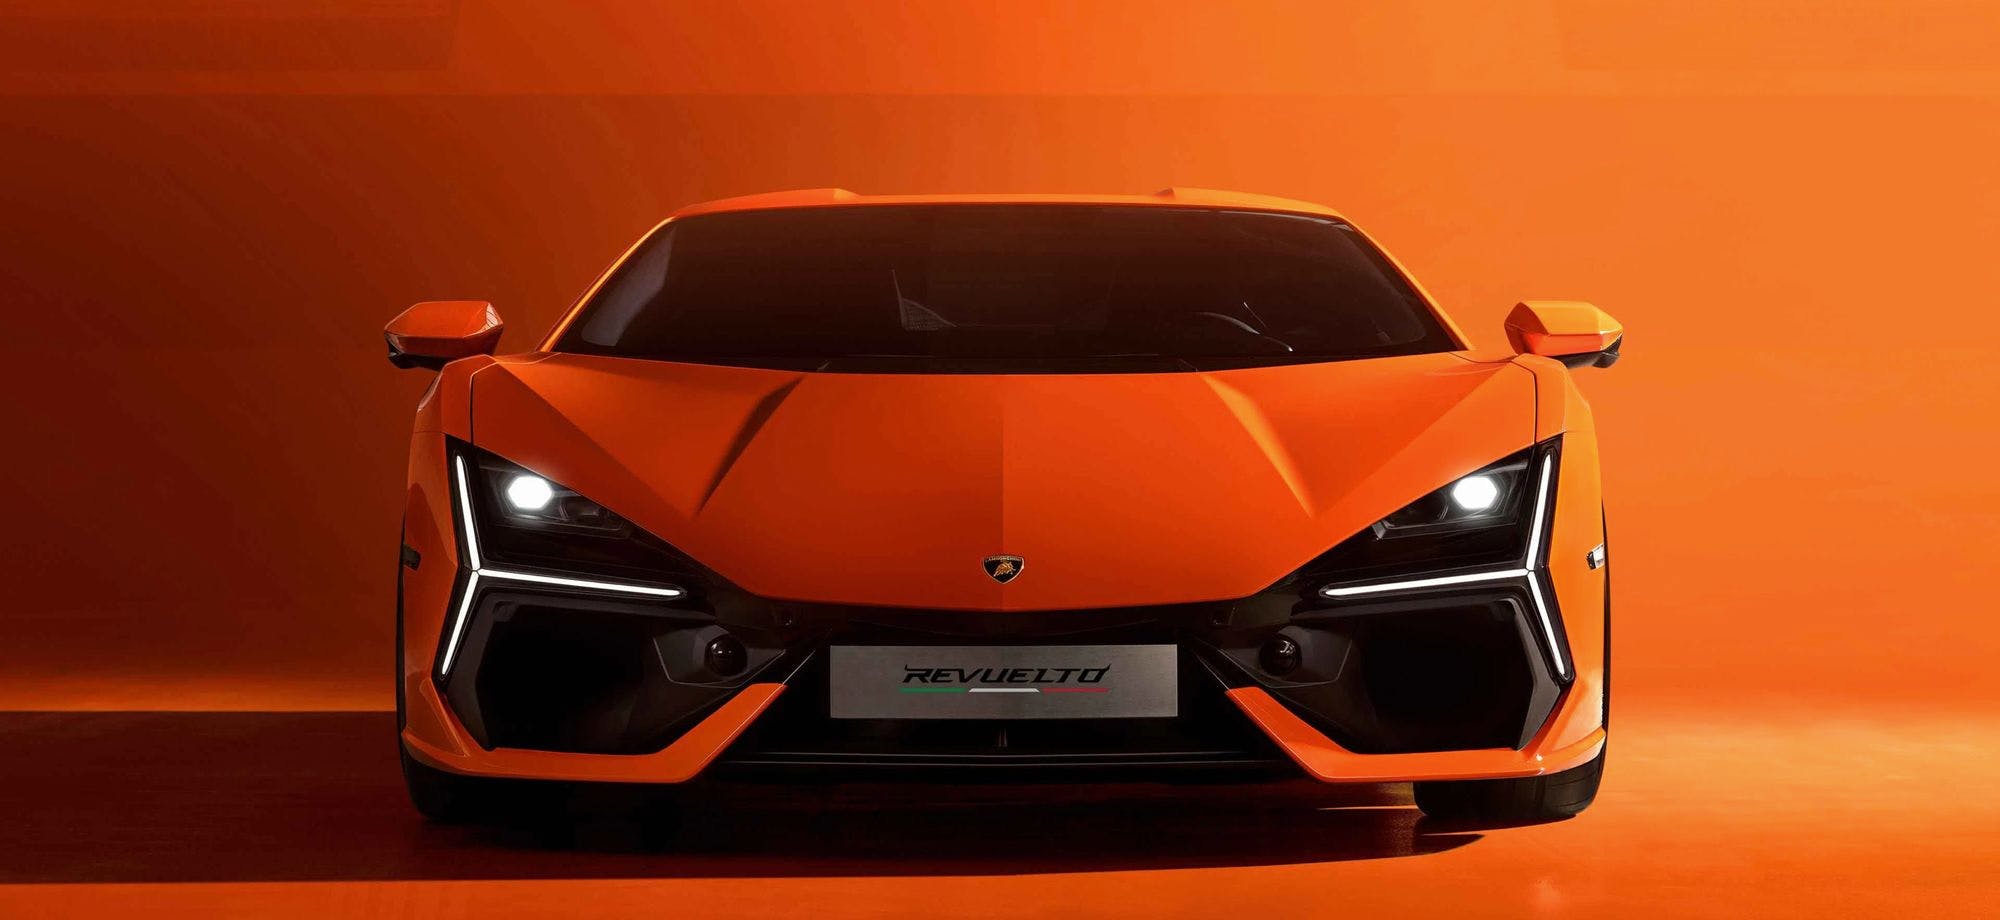 Sonus faber x Lamborghini: Elevating Italian Craftsmanship